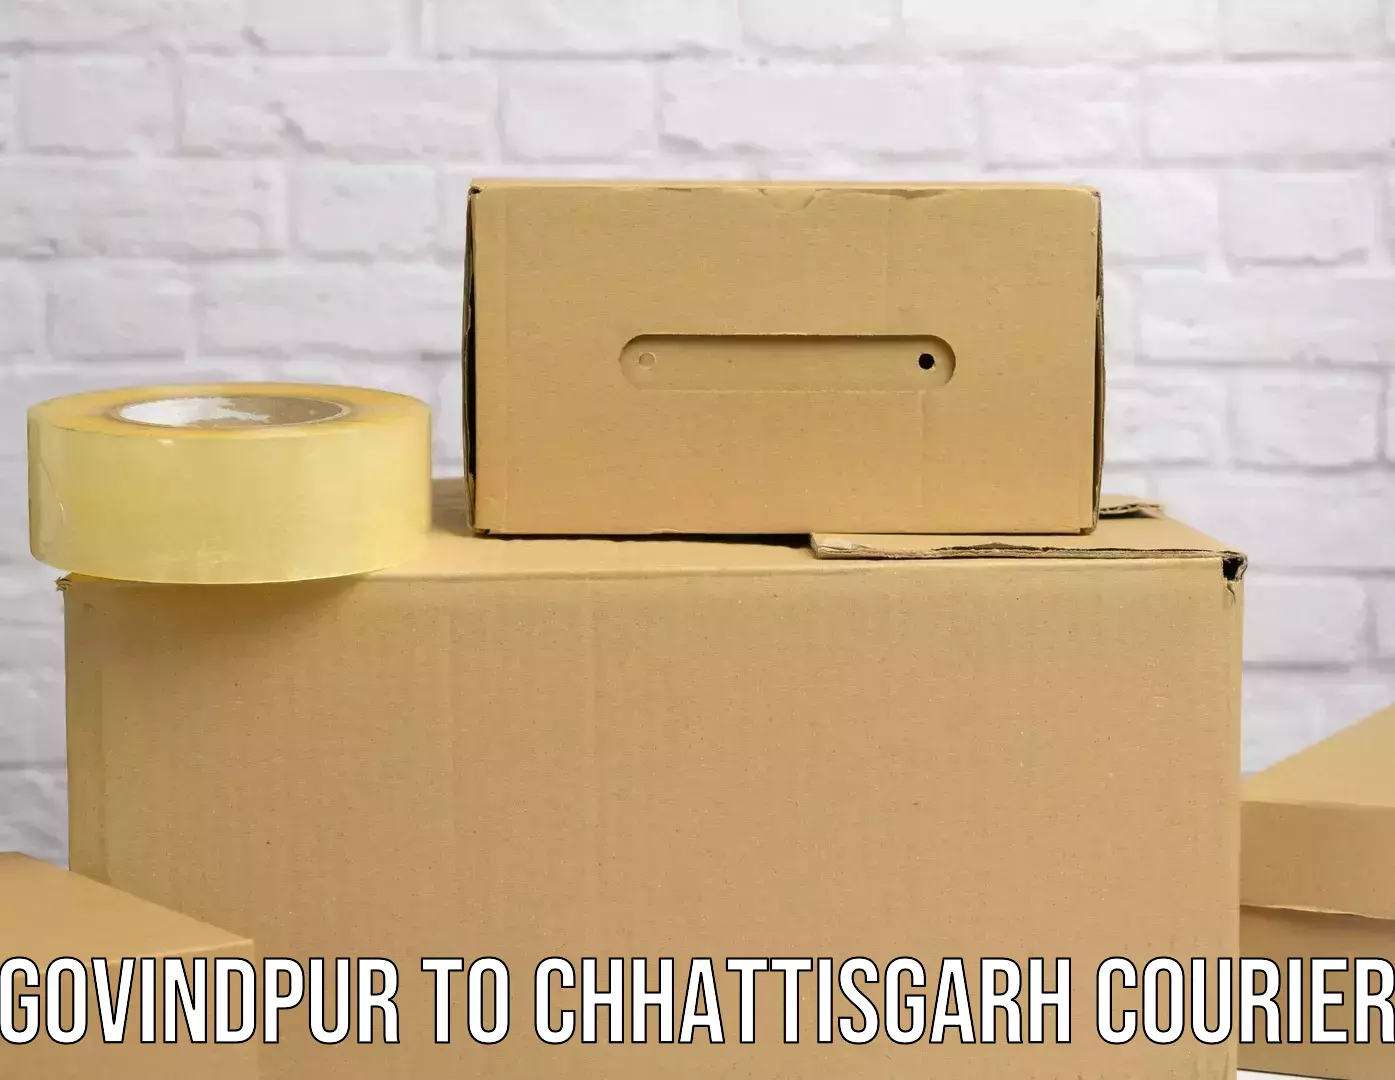 Global courier networks Govindpur to Chhattisgarh